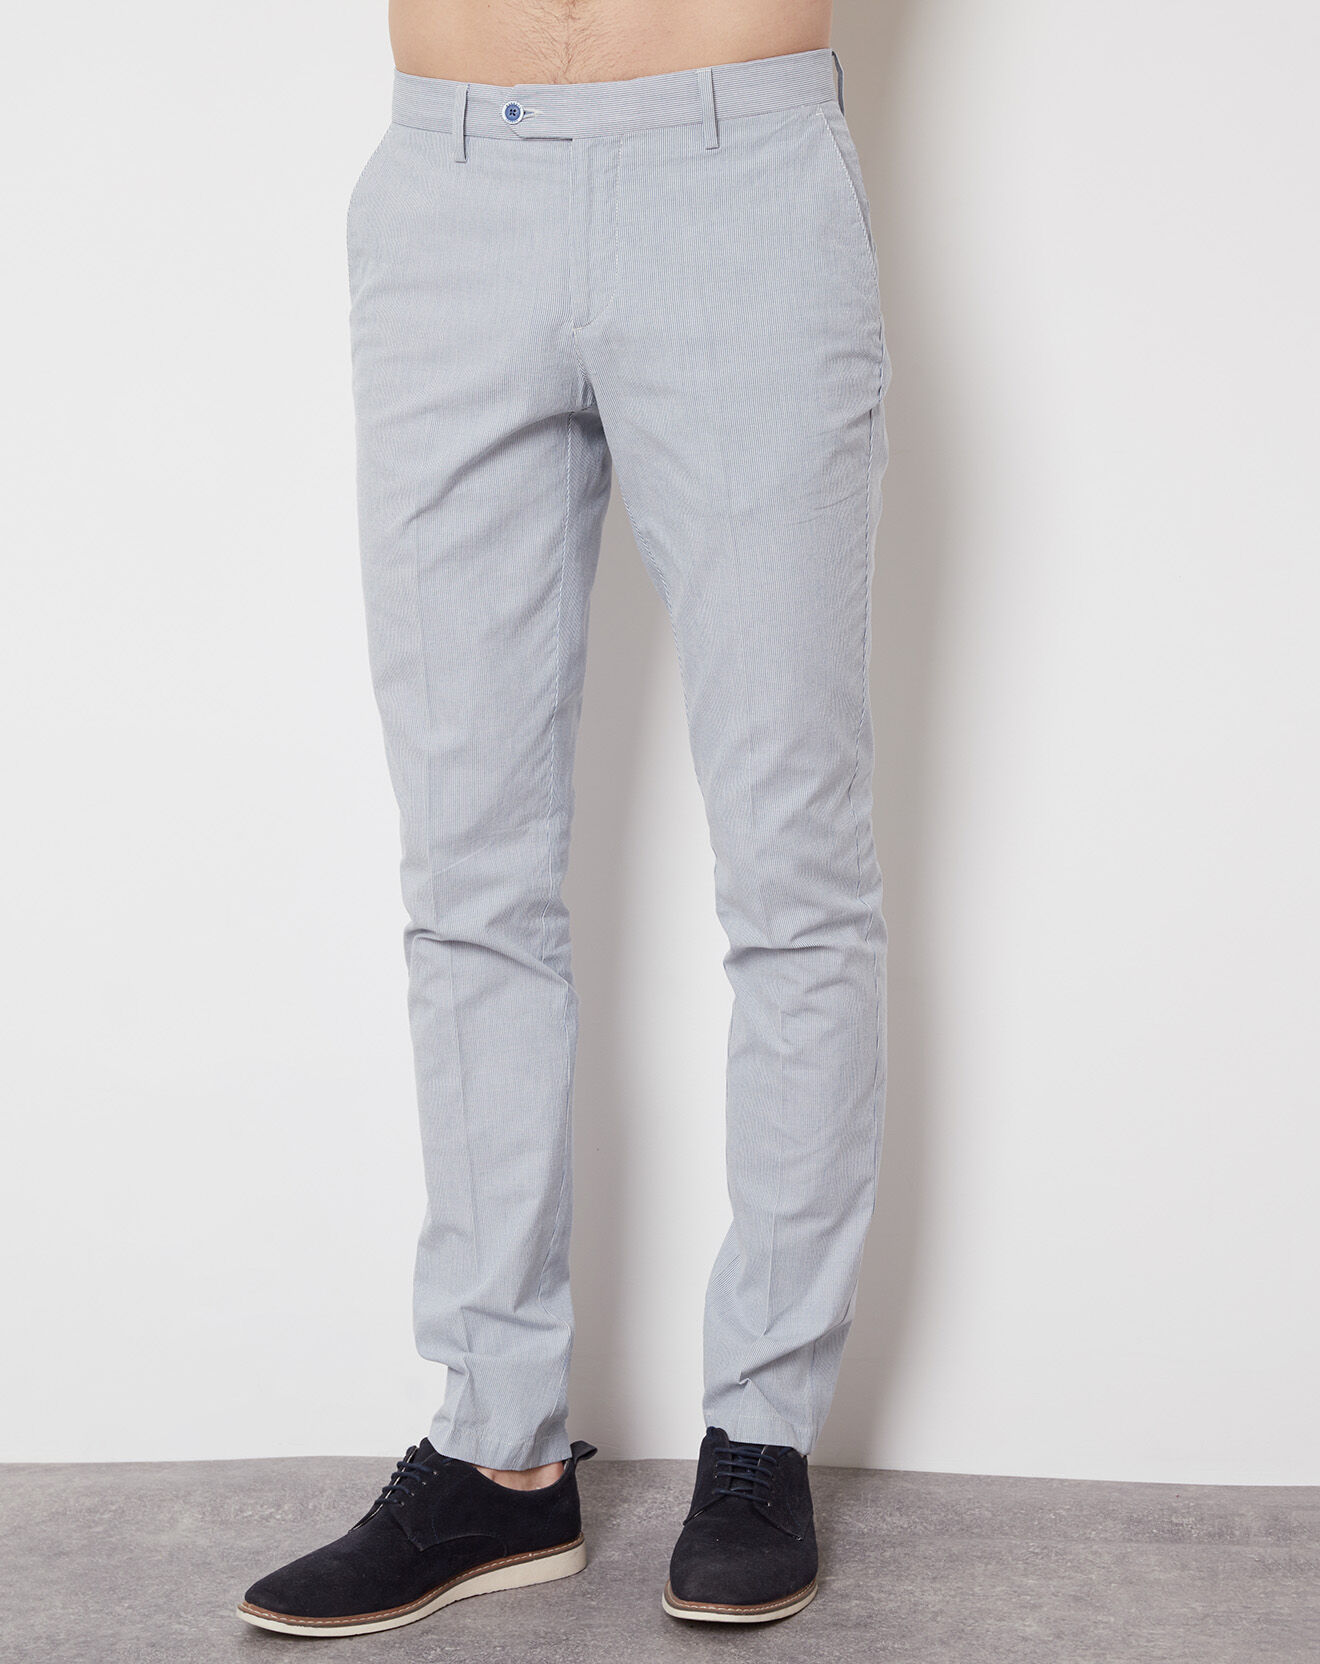 Pantalon Preppy stripes bleu/blanc